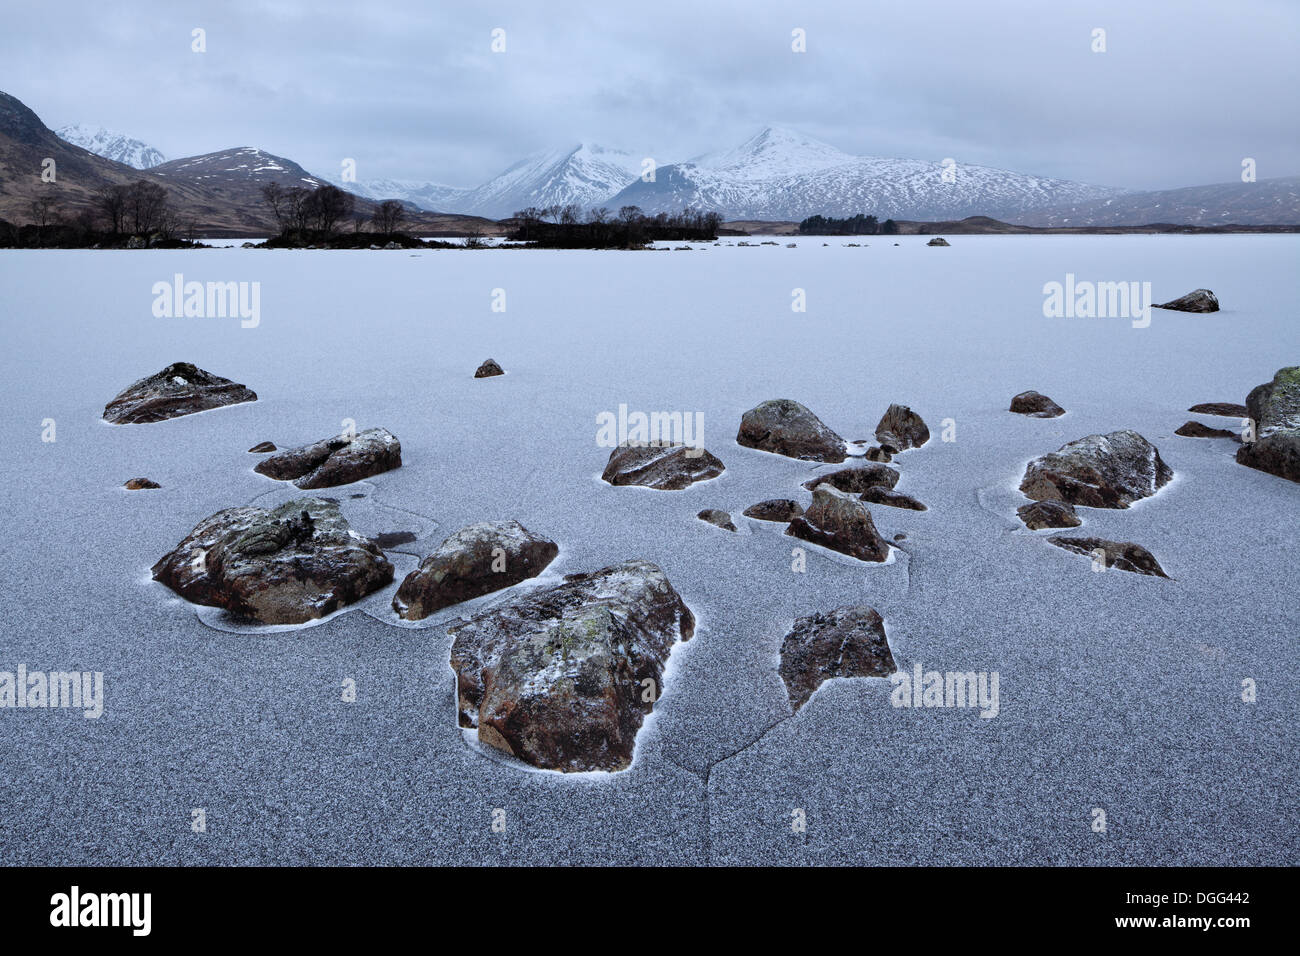 Les rochers de granit gelé dans la glace couverte de neige à Lochan na-h-Achlaise sur Rannoch Moor dans les Highlands d'Ecosse Banque D'Images